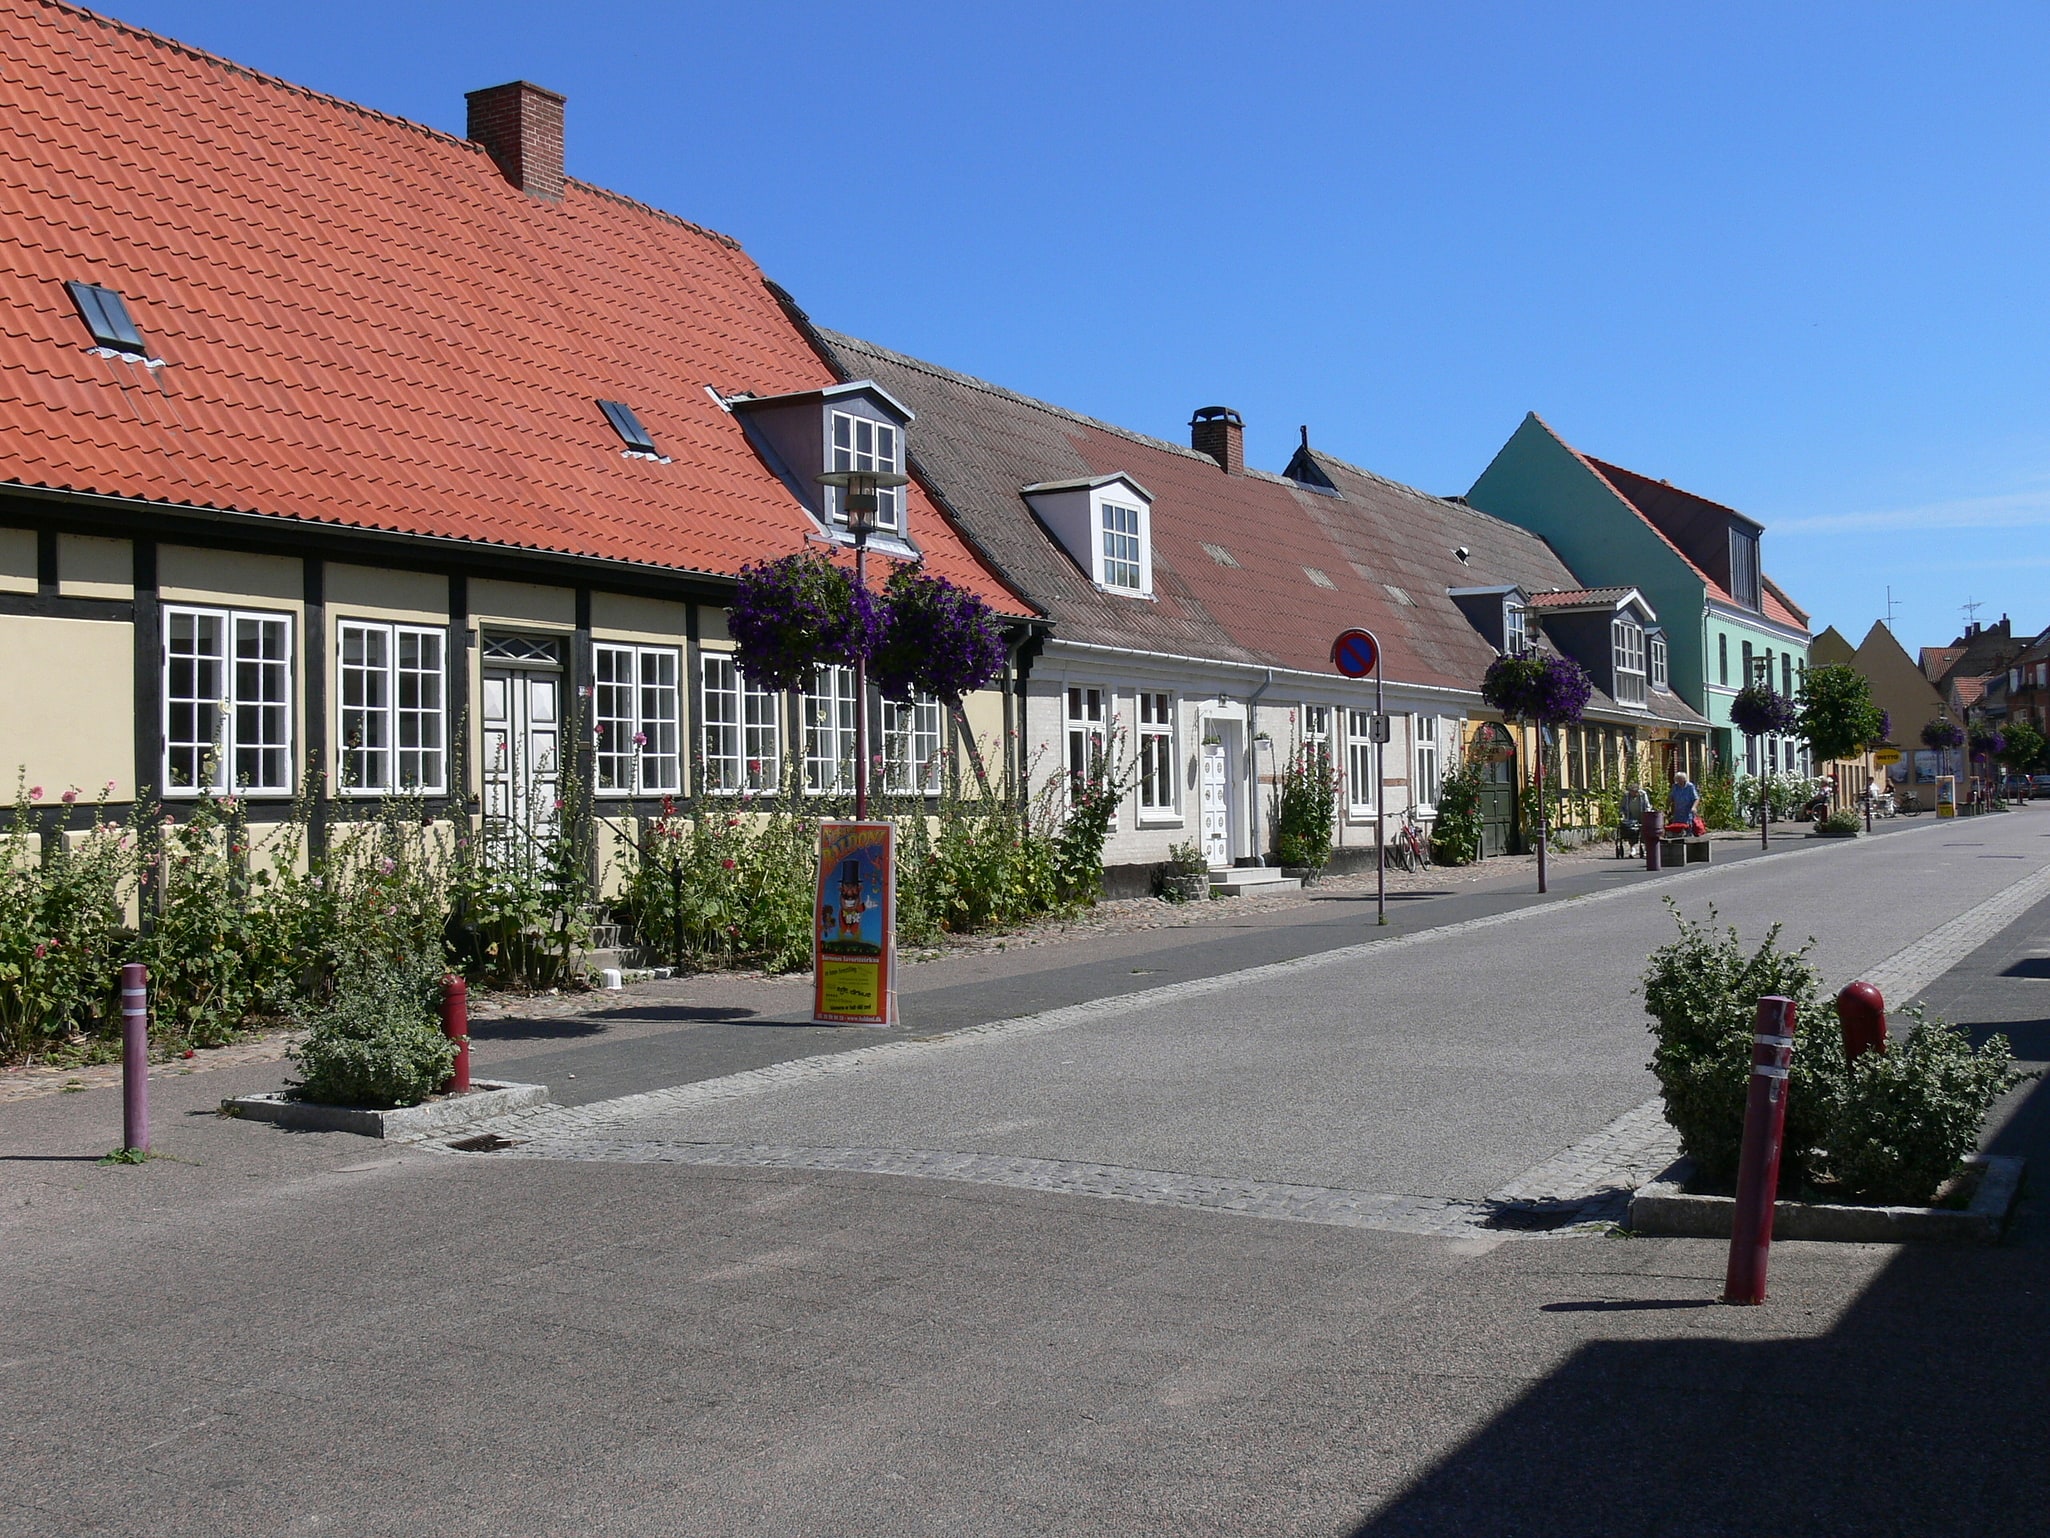 Falster, Denmark